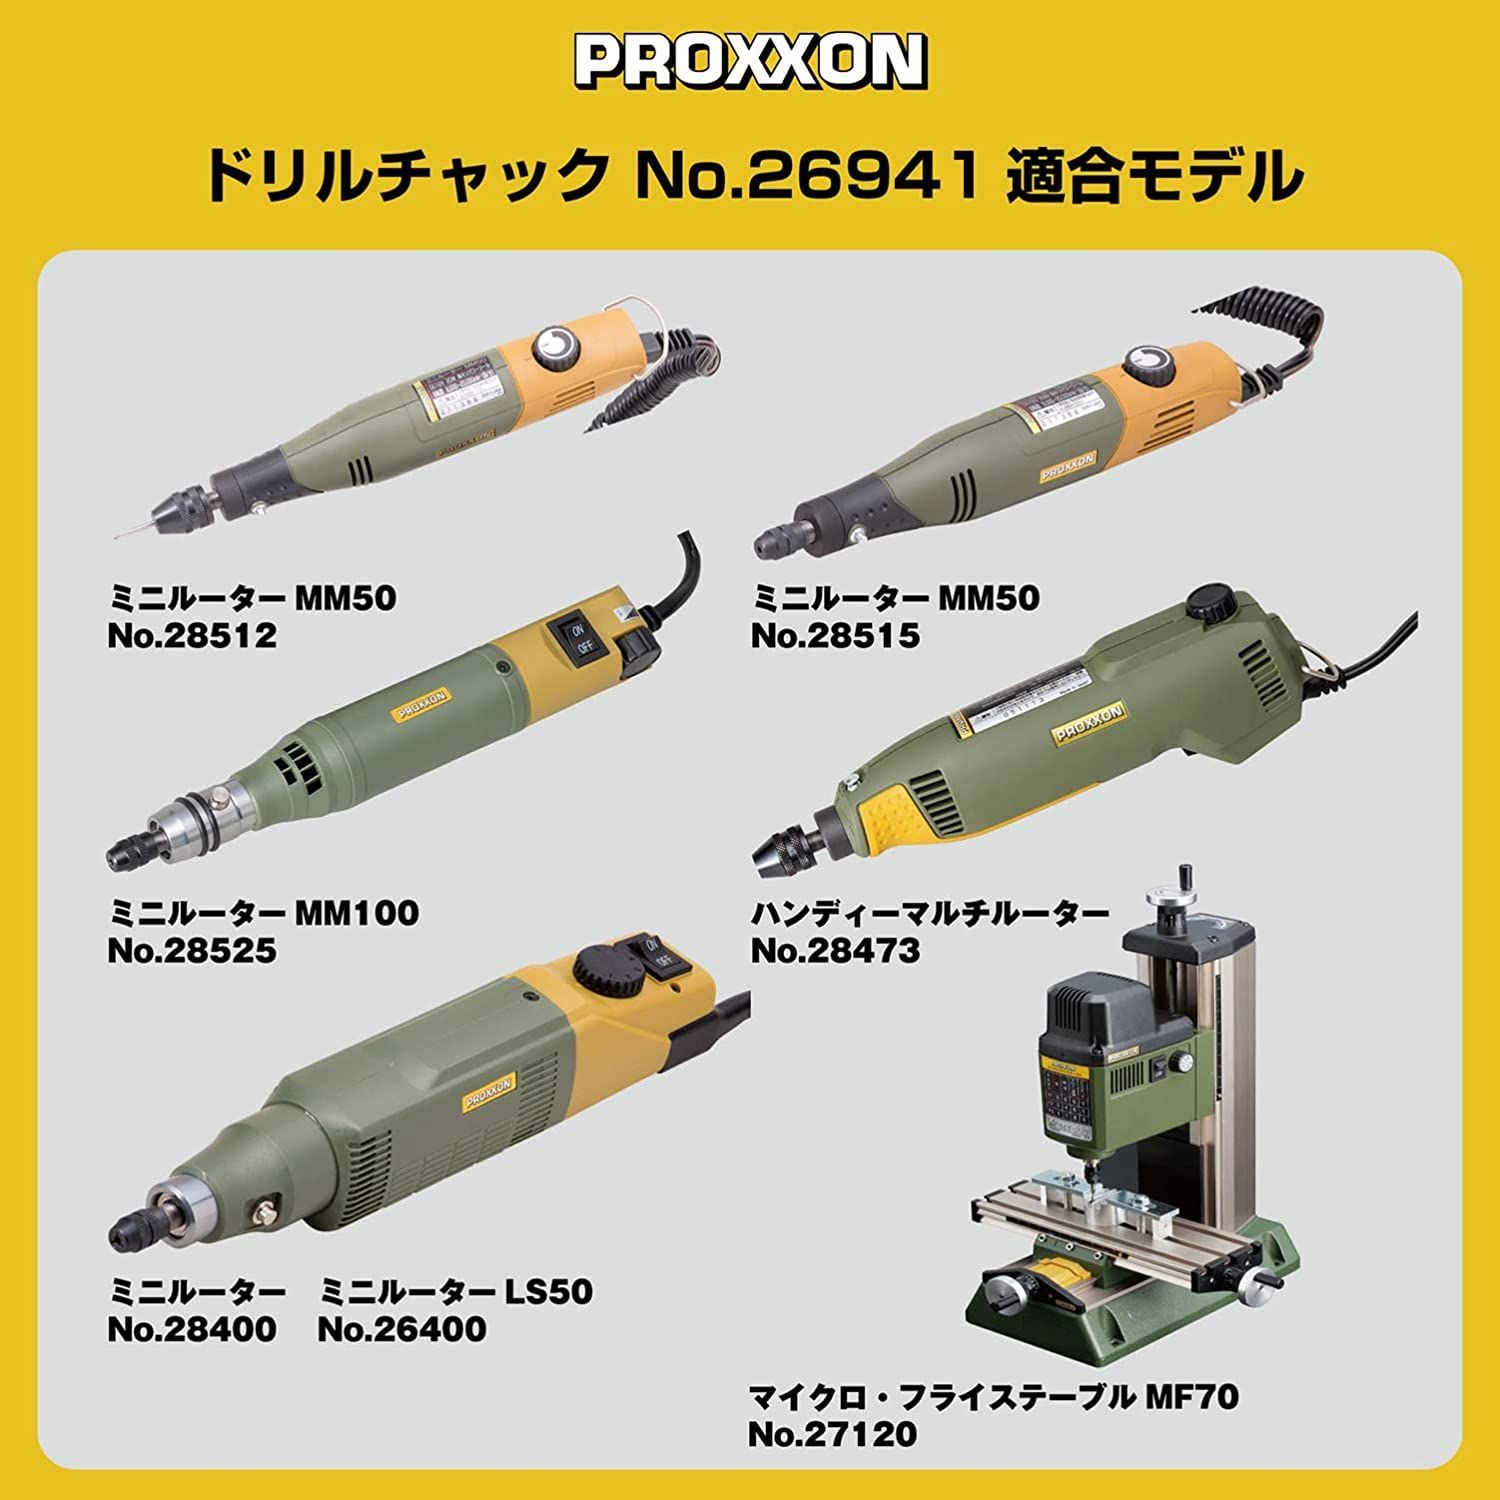 プロクソン(PROXXON) ミニルーター 回転数が調節可能 MM100 No.28525